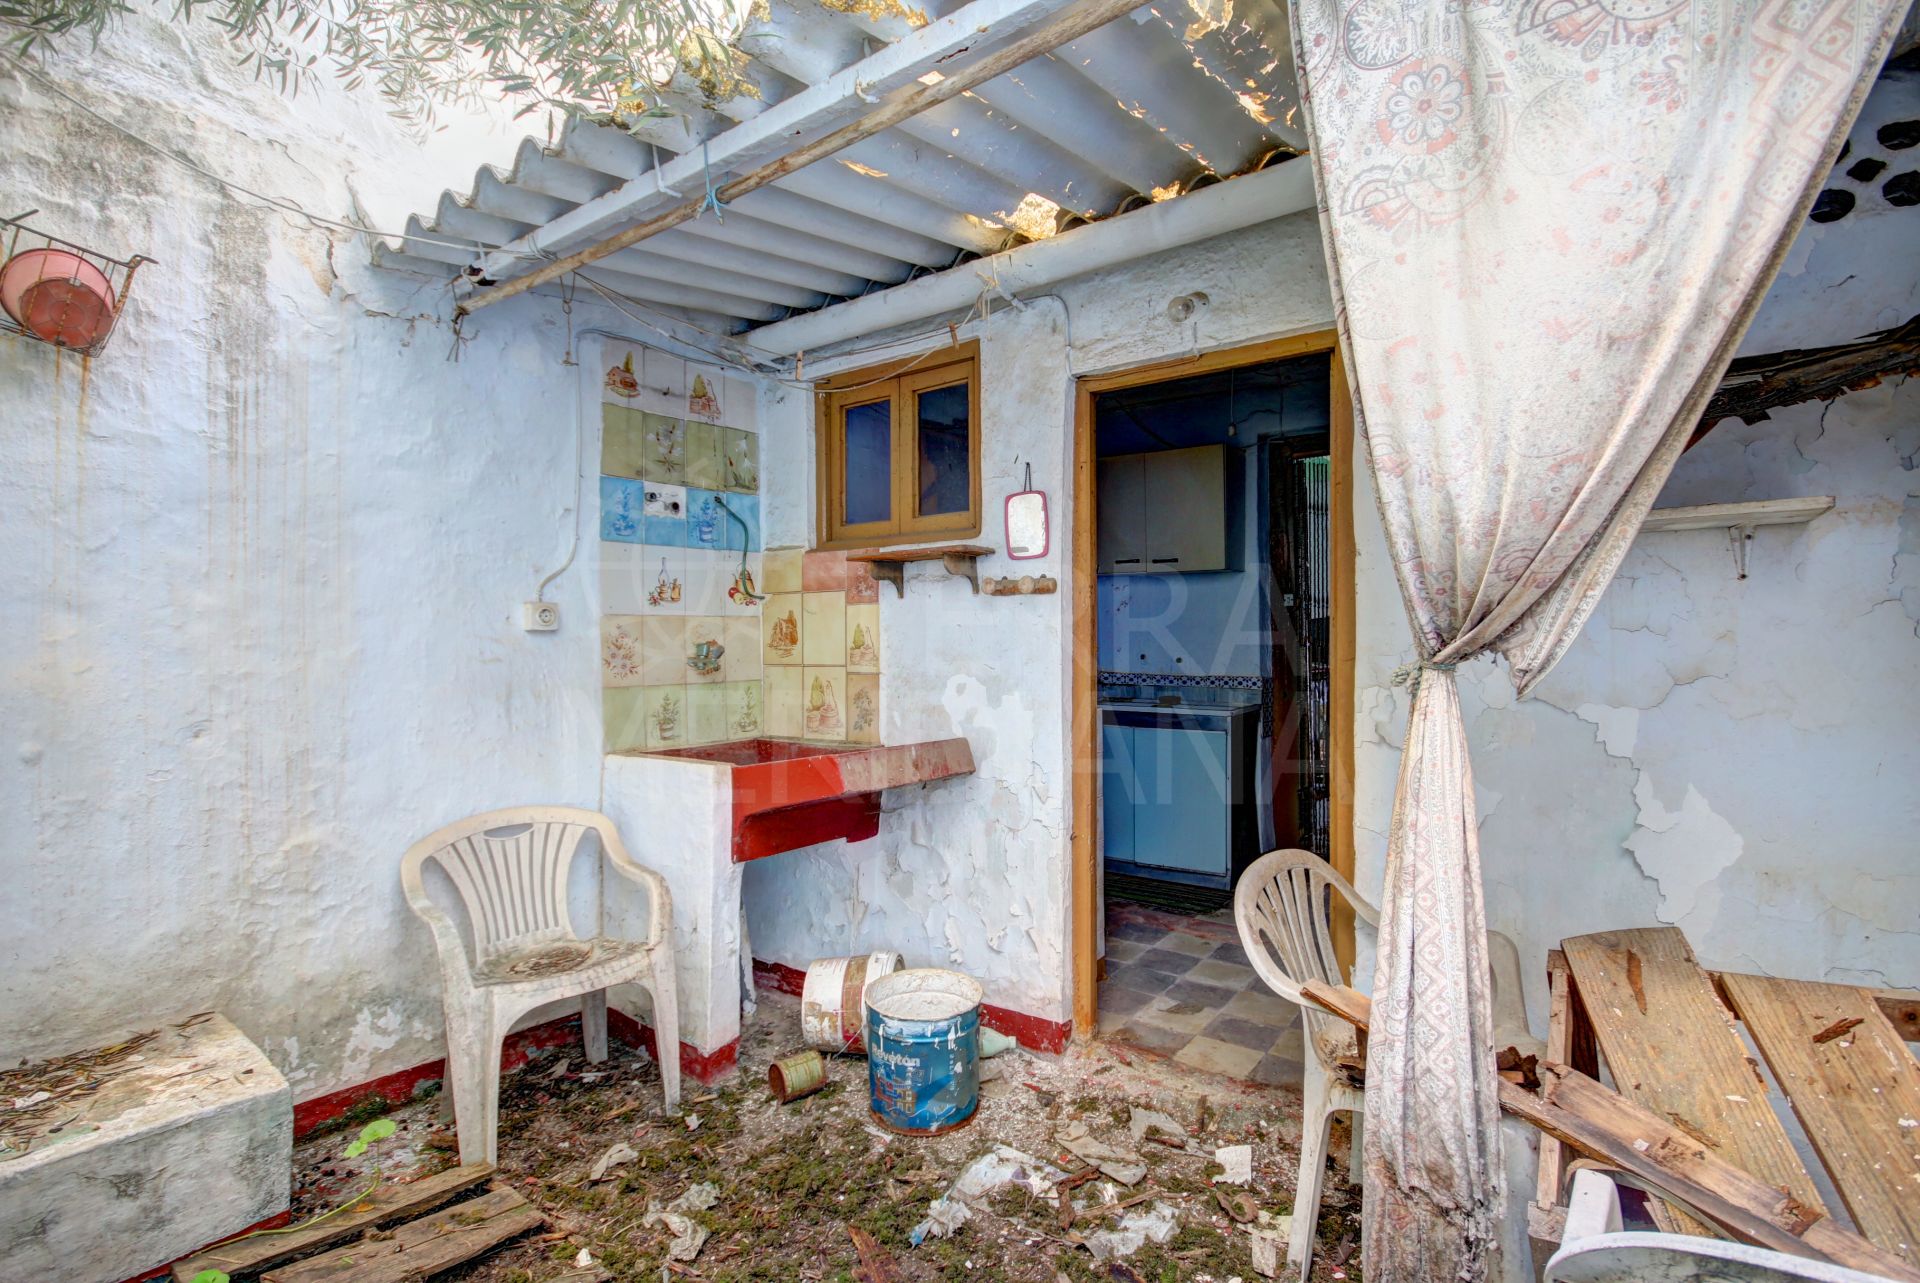 Casa mata en venta en el casco antiguo de Estepona, menos de 100 metros de la play